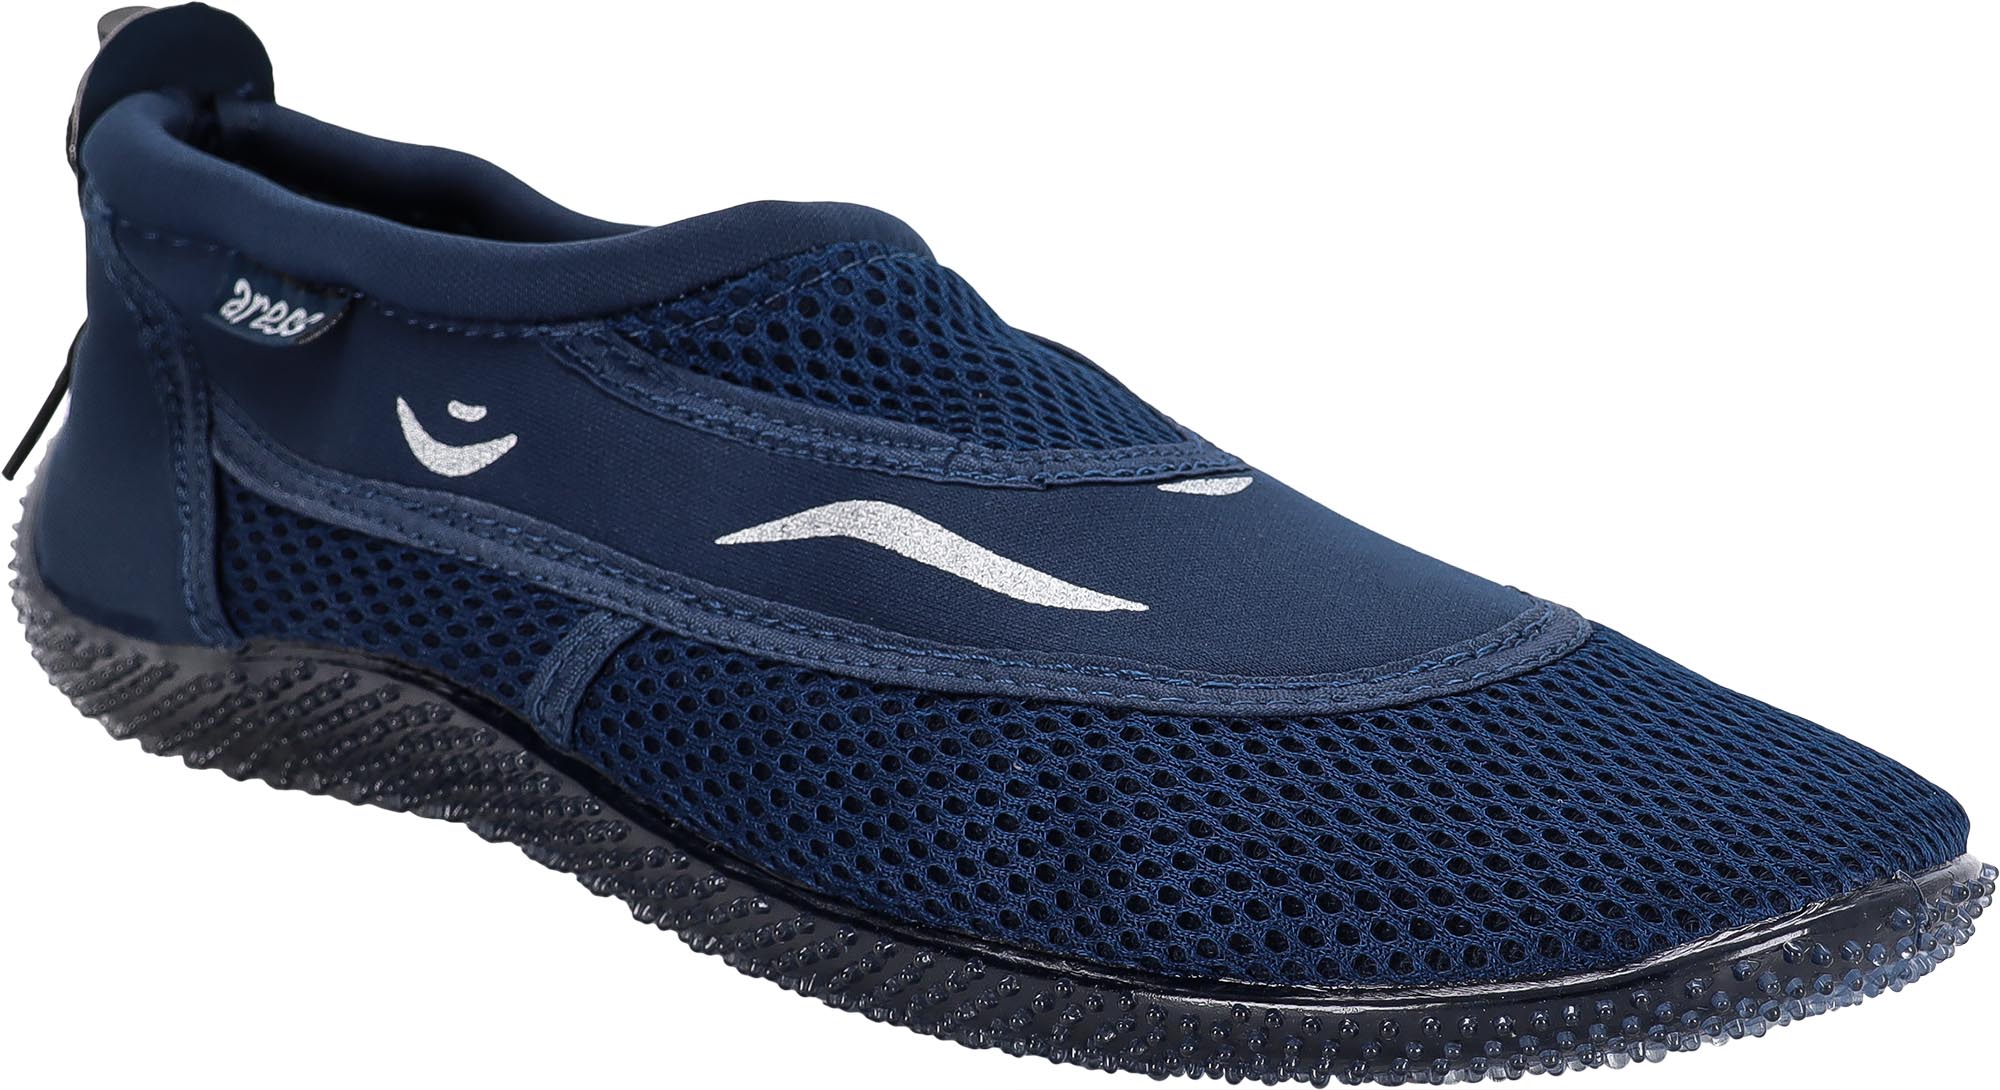 Men's water shoes